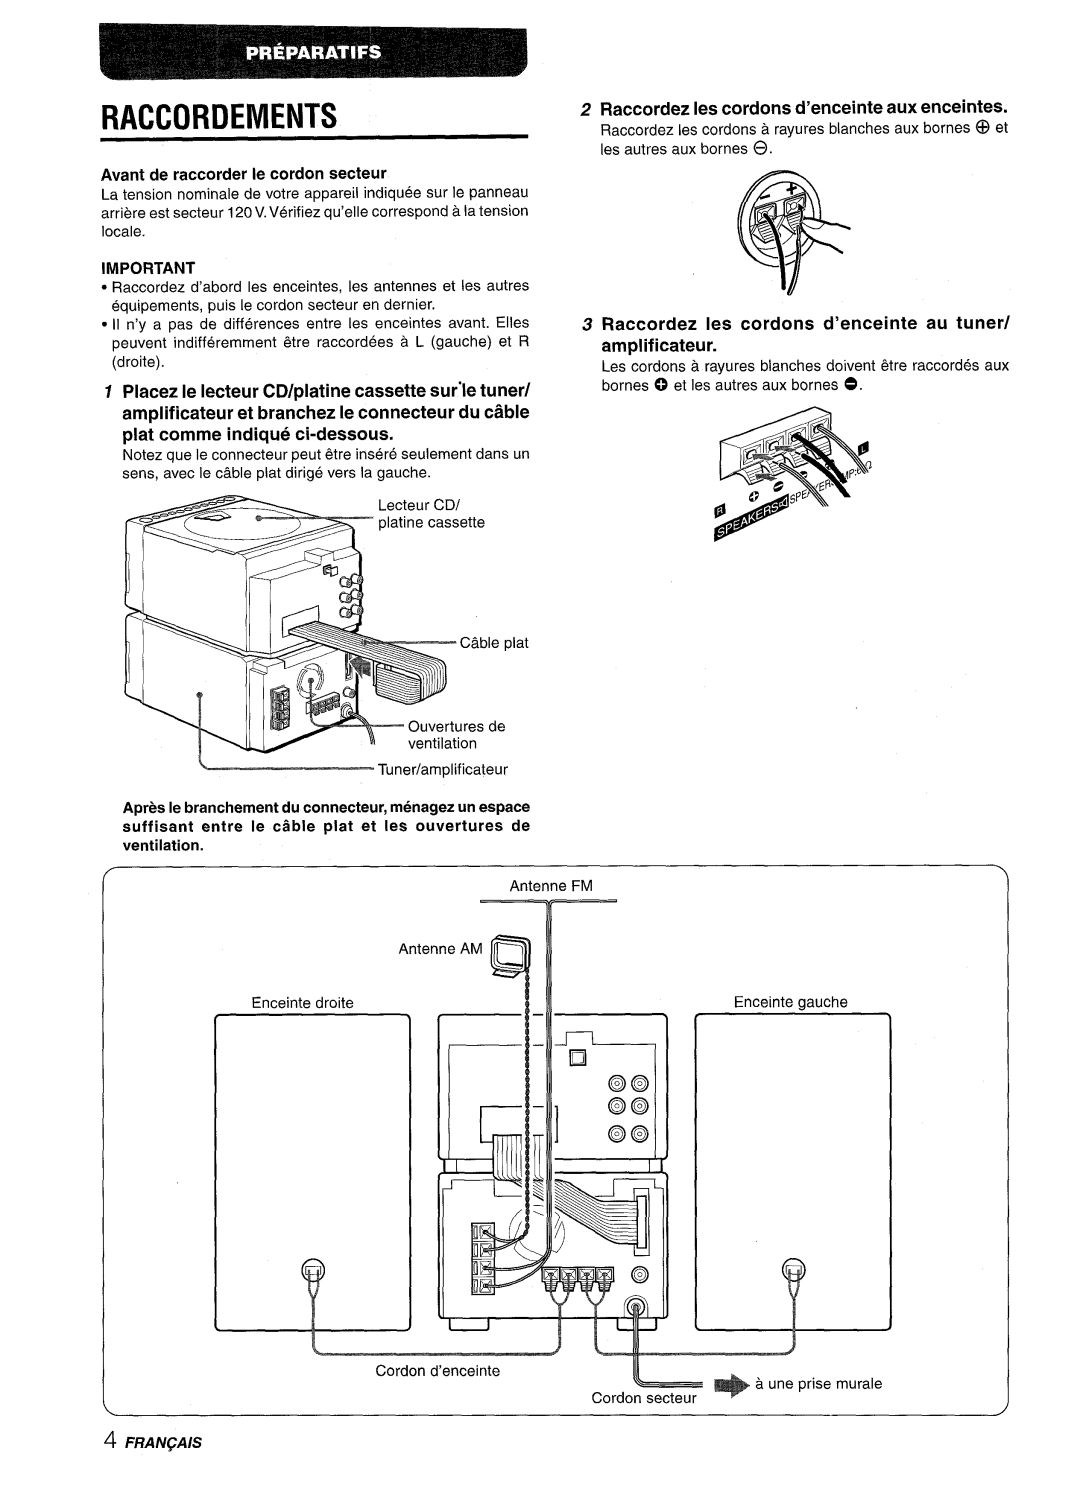 Aiwa XR-M88 manual Raccordements, Avant de raccorder Ie cordon secteur, Placez Ie Iecteur CD/platine cassette sur”le tuner 